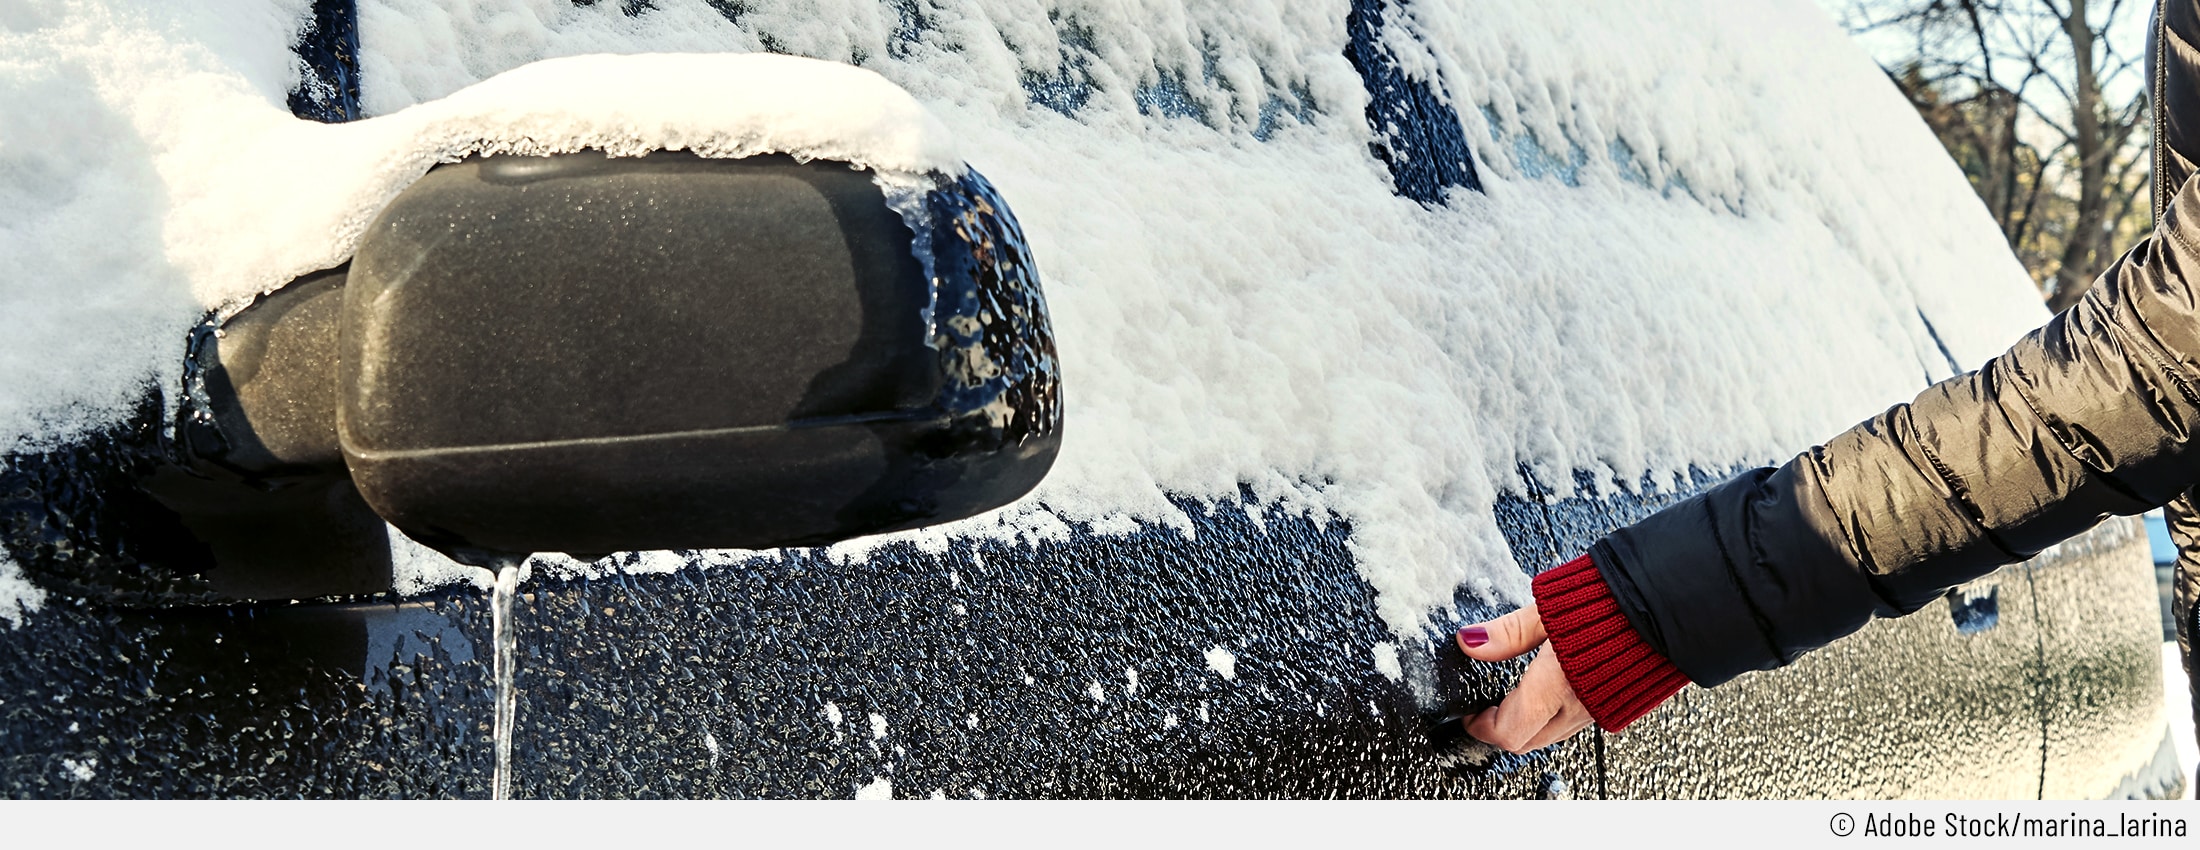 Headerbild zum Blogbeitrag "Eingefrorene Autotüren"